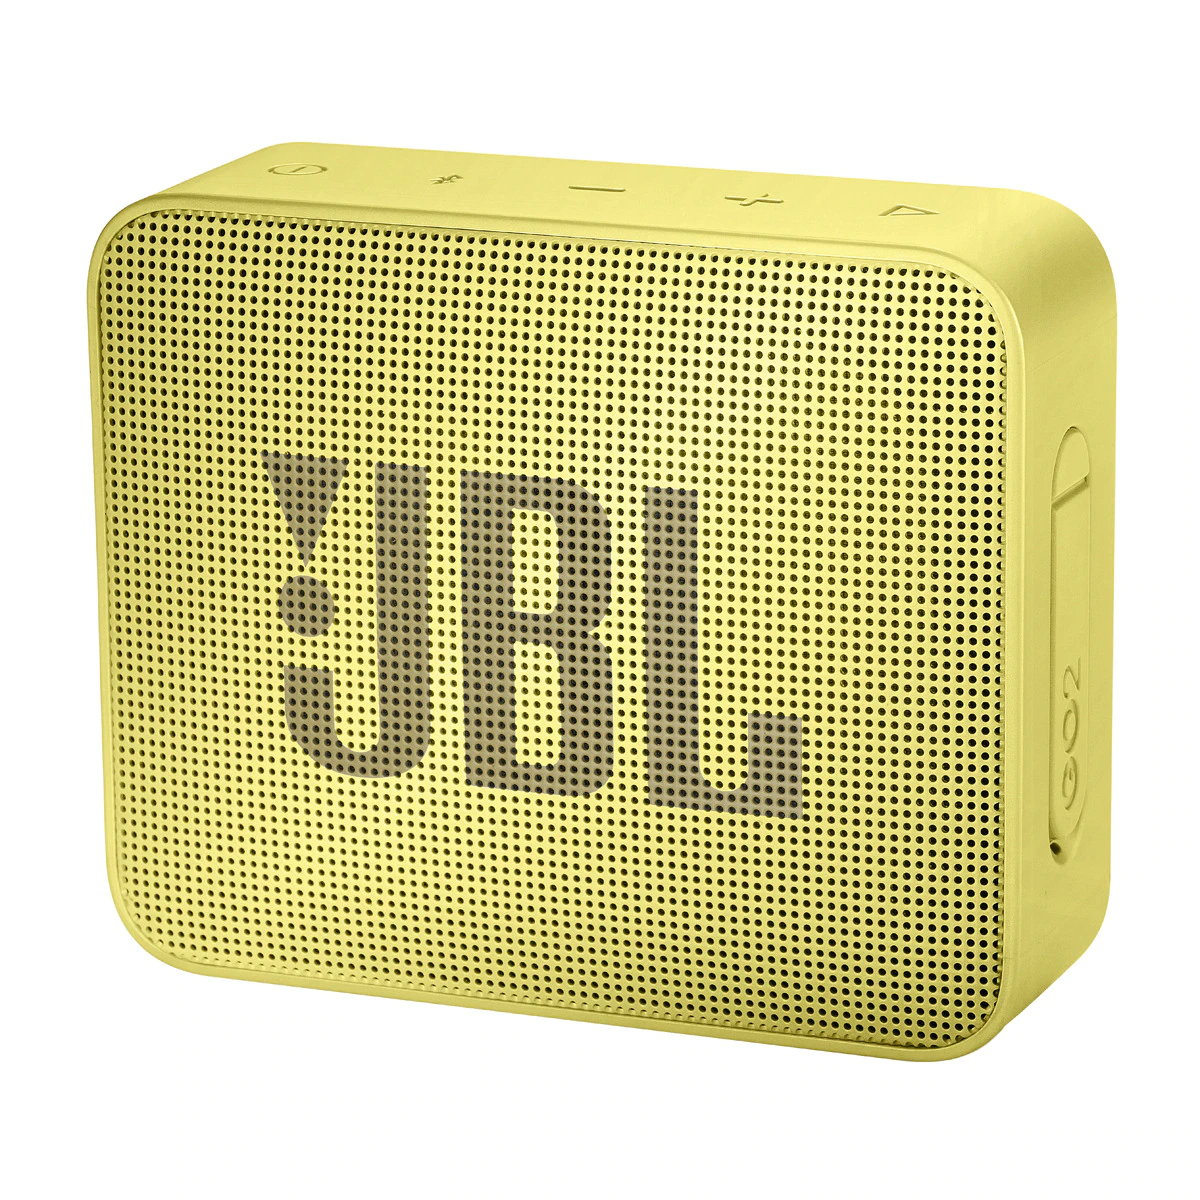 Altavoz portátil JBL GO 2 IPX7 Bluetooth Amarillo